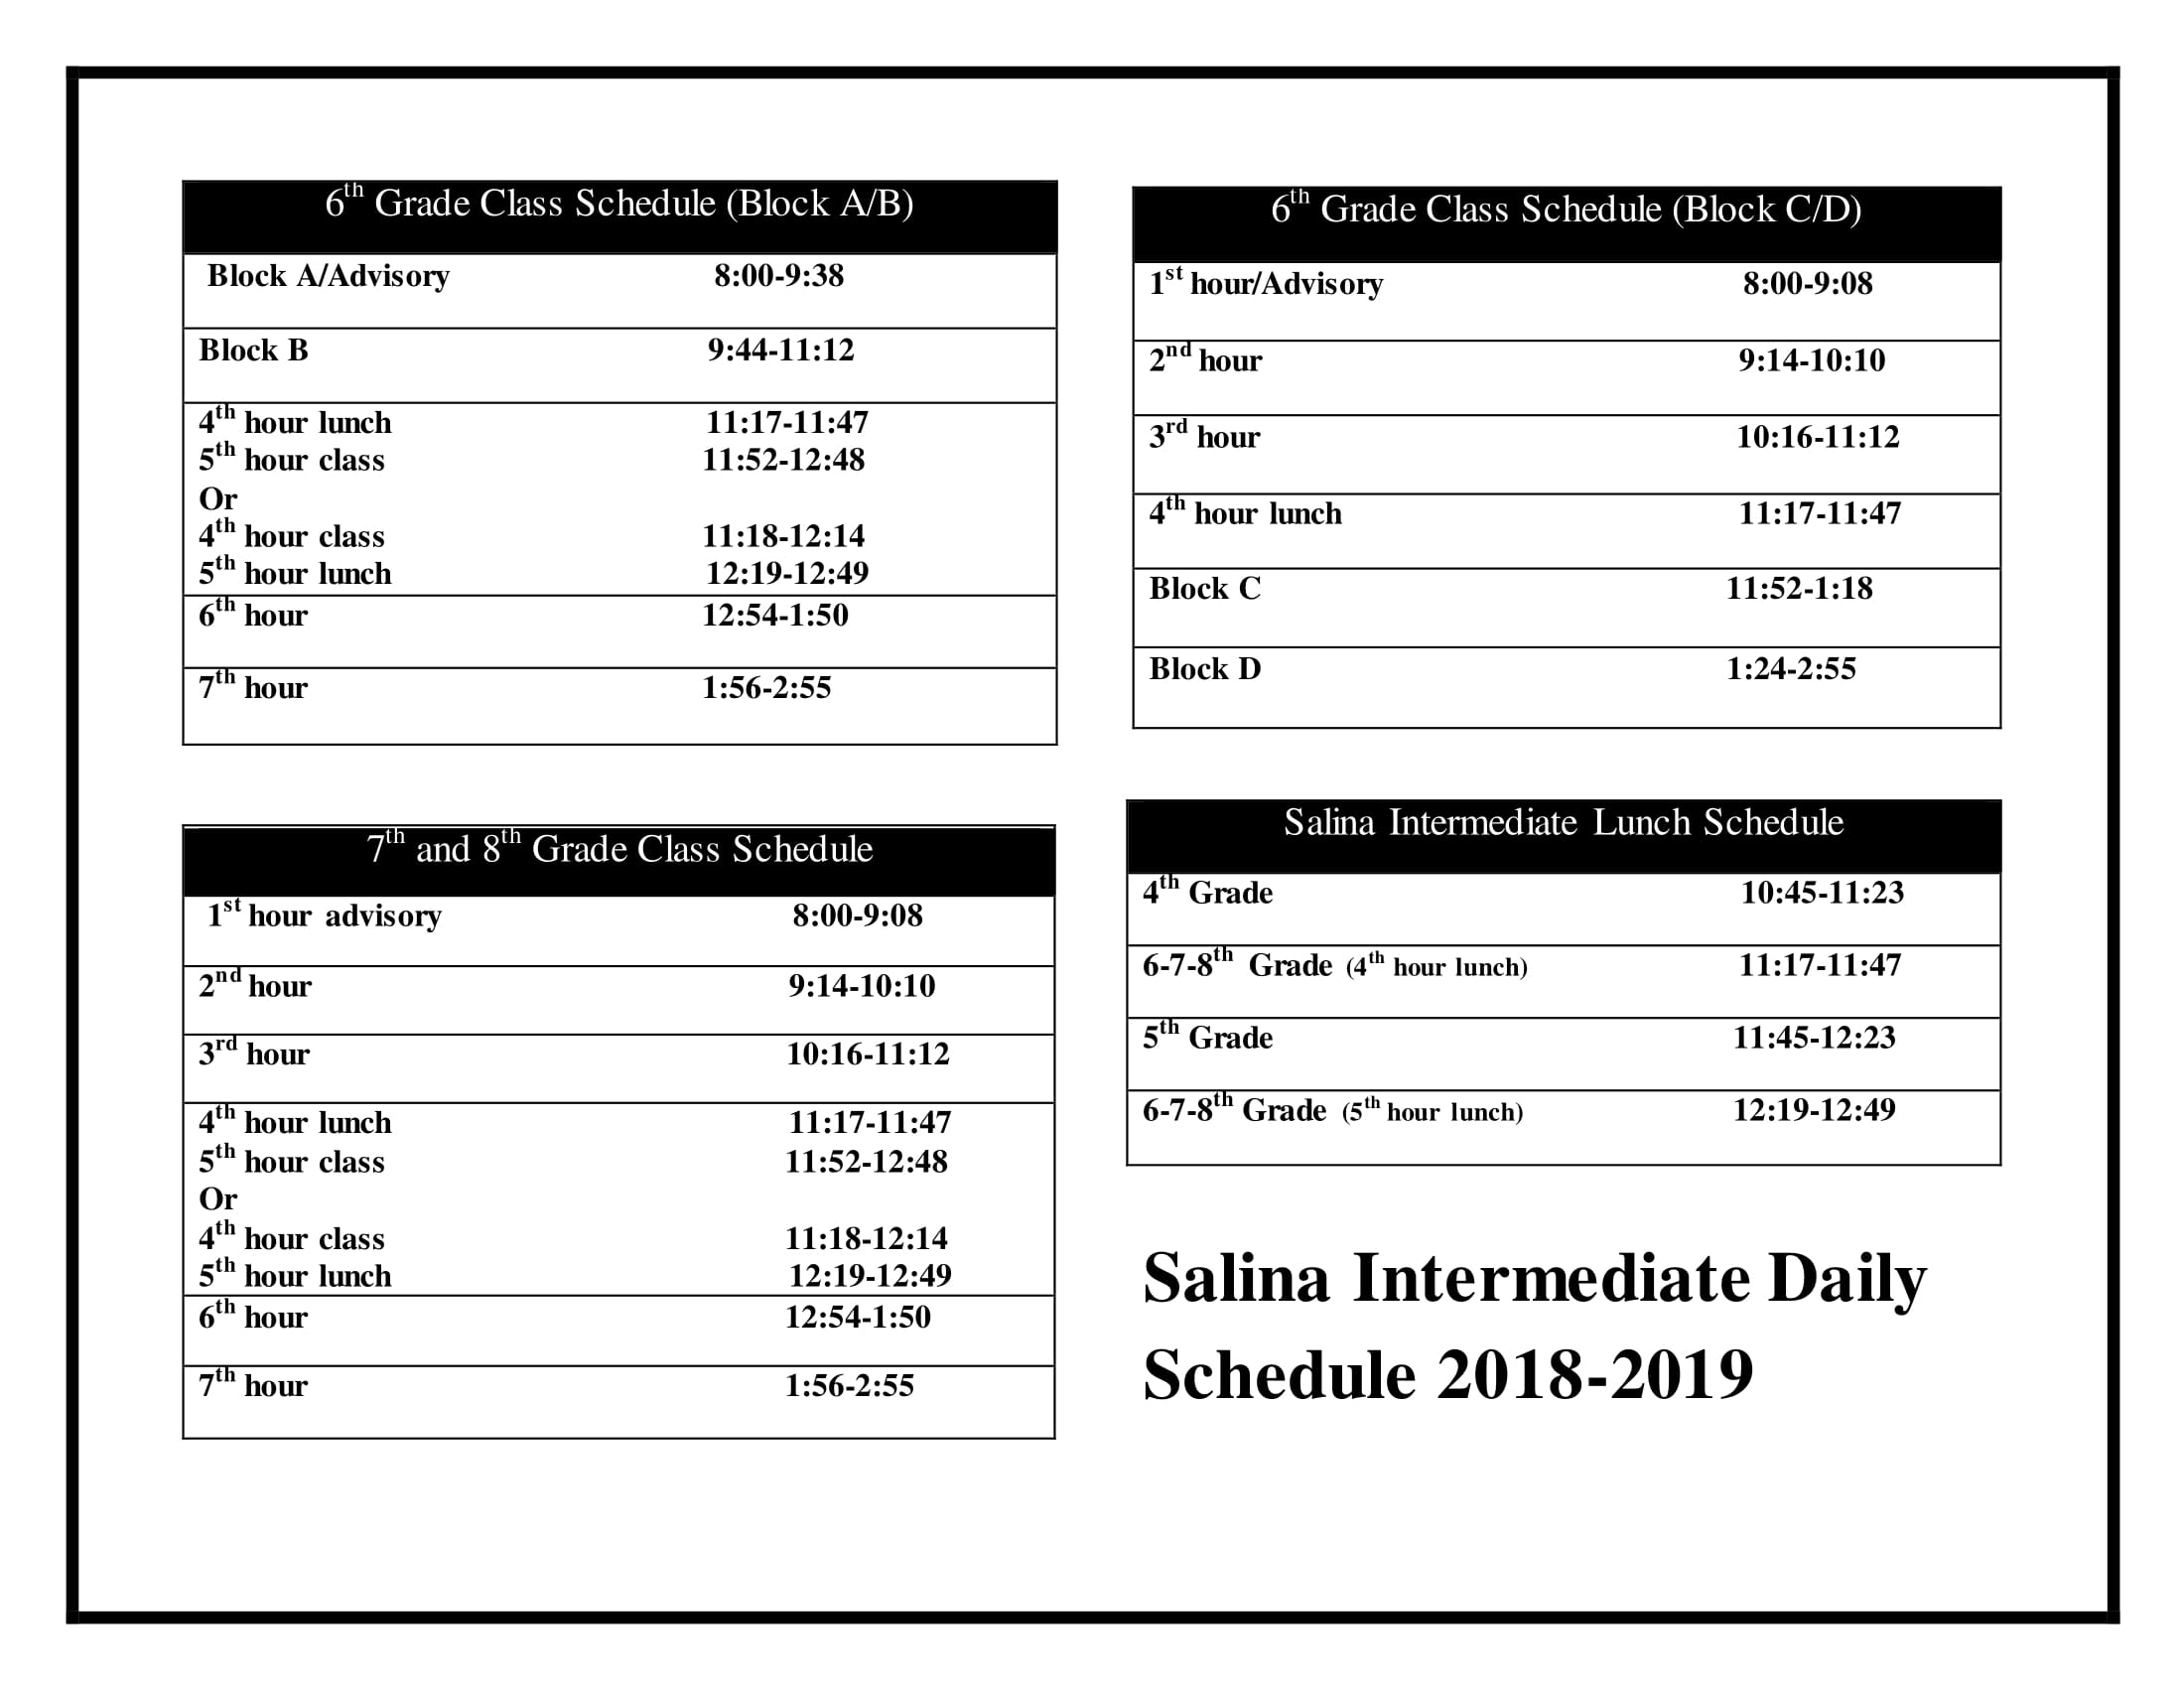 Salina Intermediate Daily Schedule